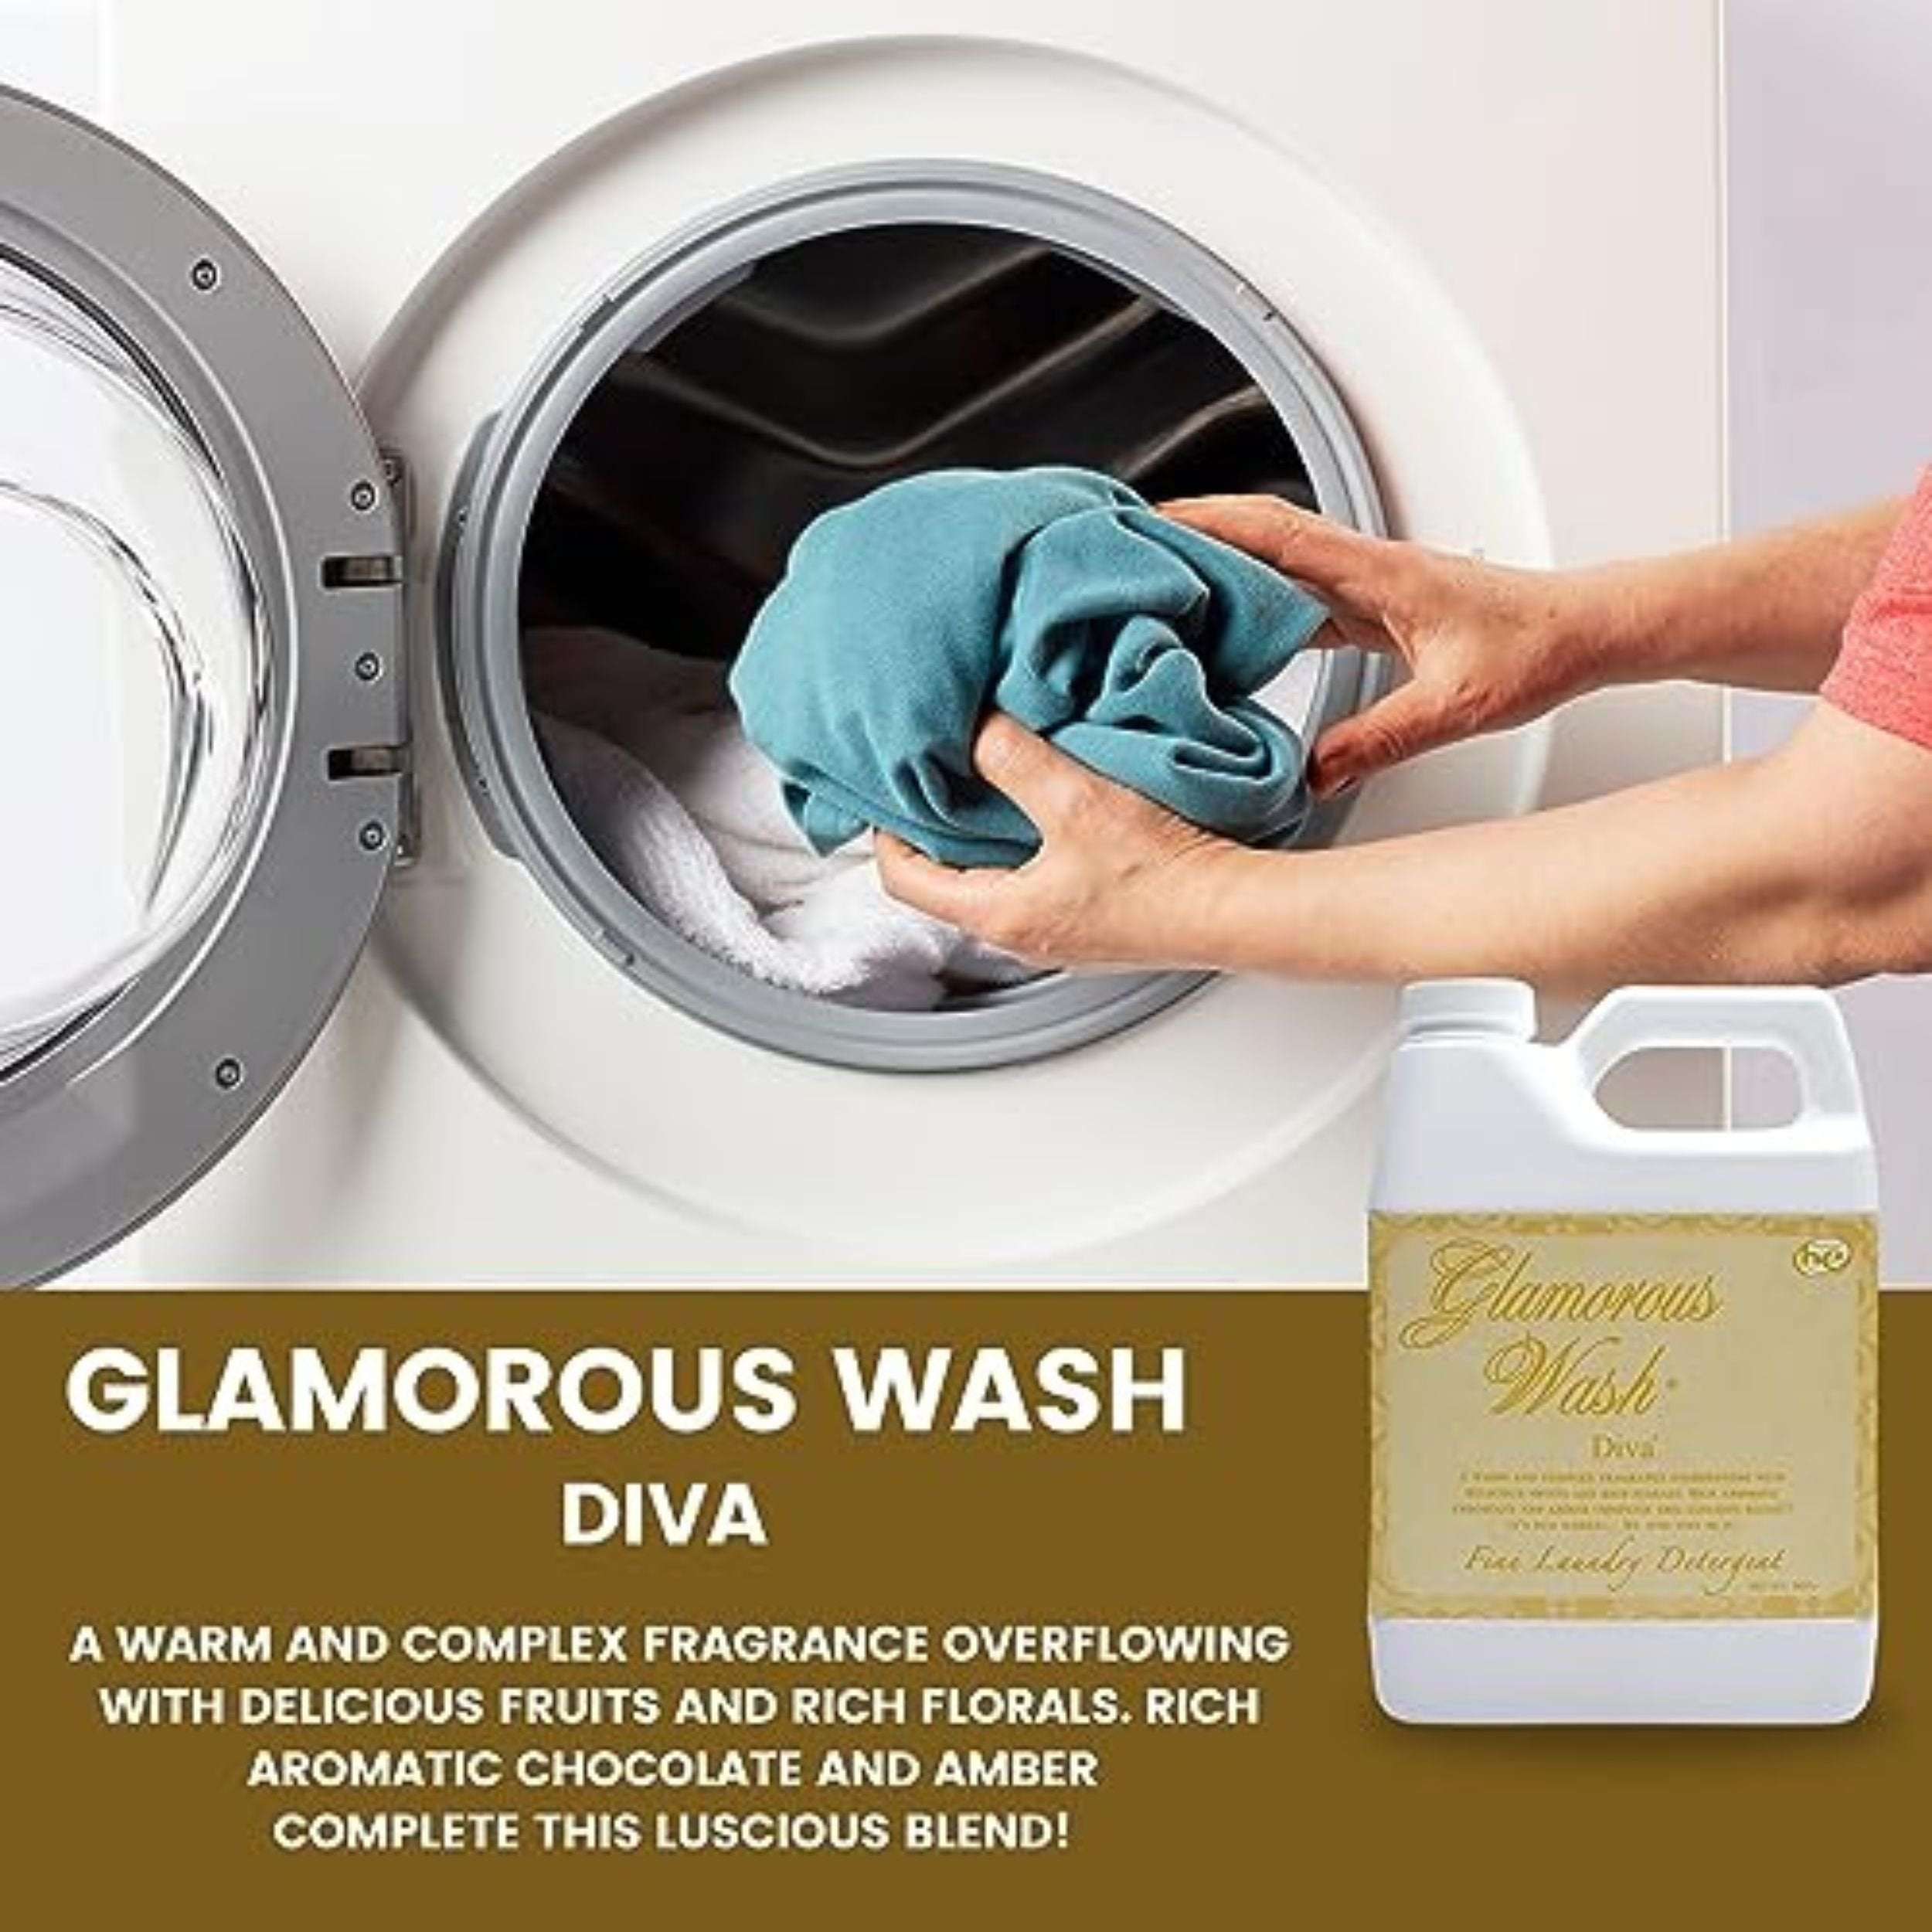 Tyler Glamorous Wash Diva Laundry Liquid Detergent - Hand and Machine Washable Diva Laundry Detergent - 907g (32 Fl Oz) Diva Detergent and Multi-Purpose Key Chain